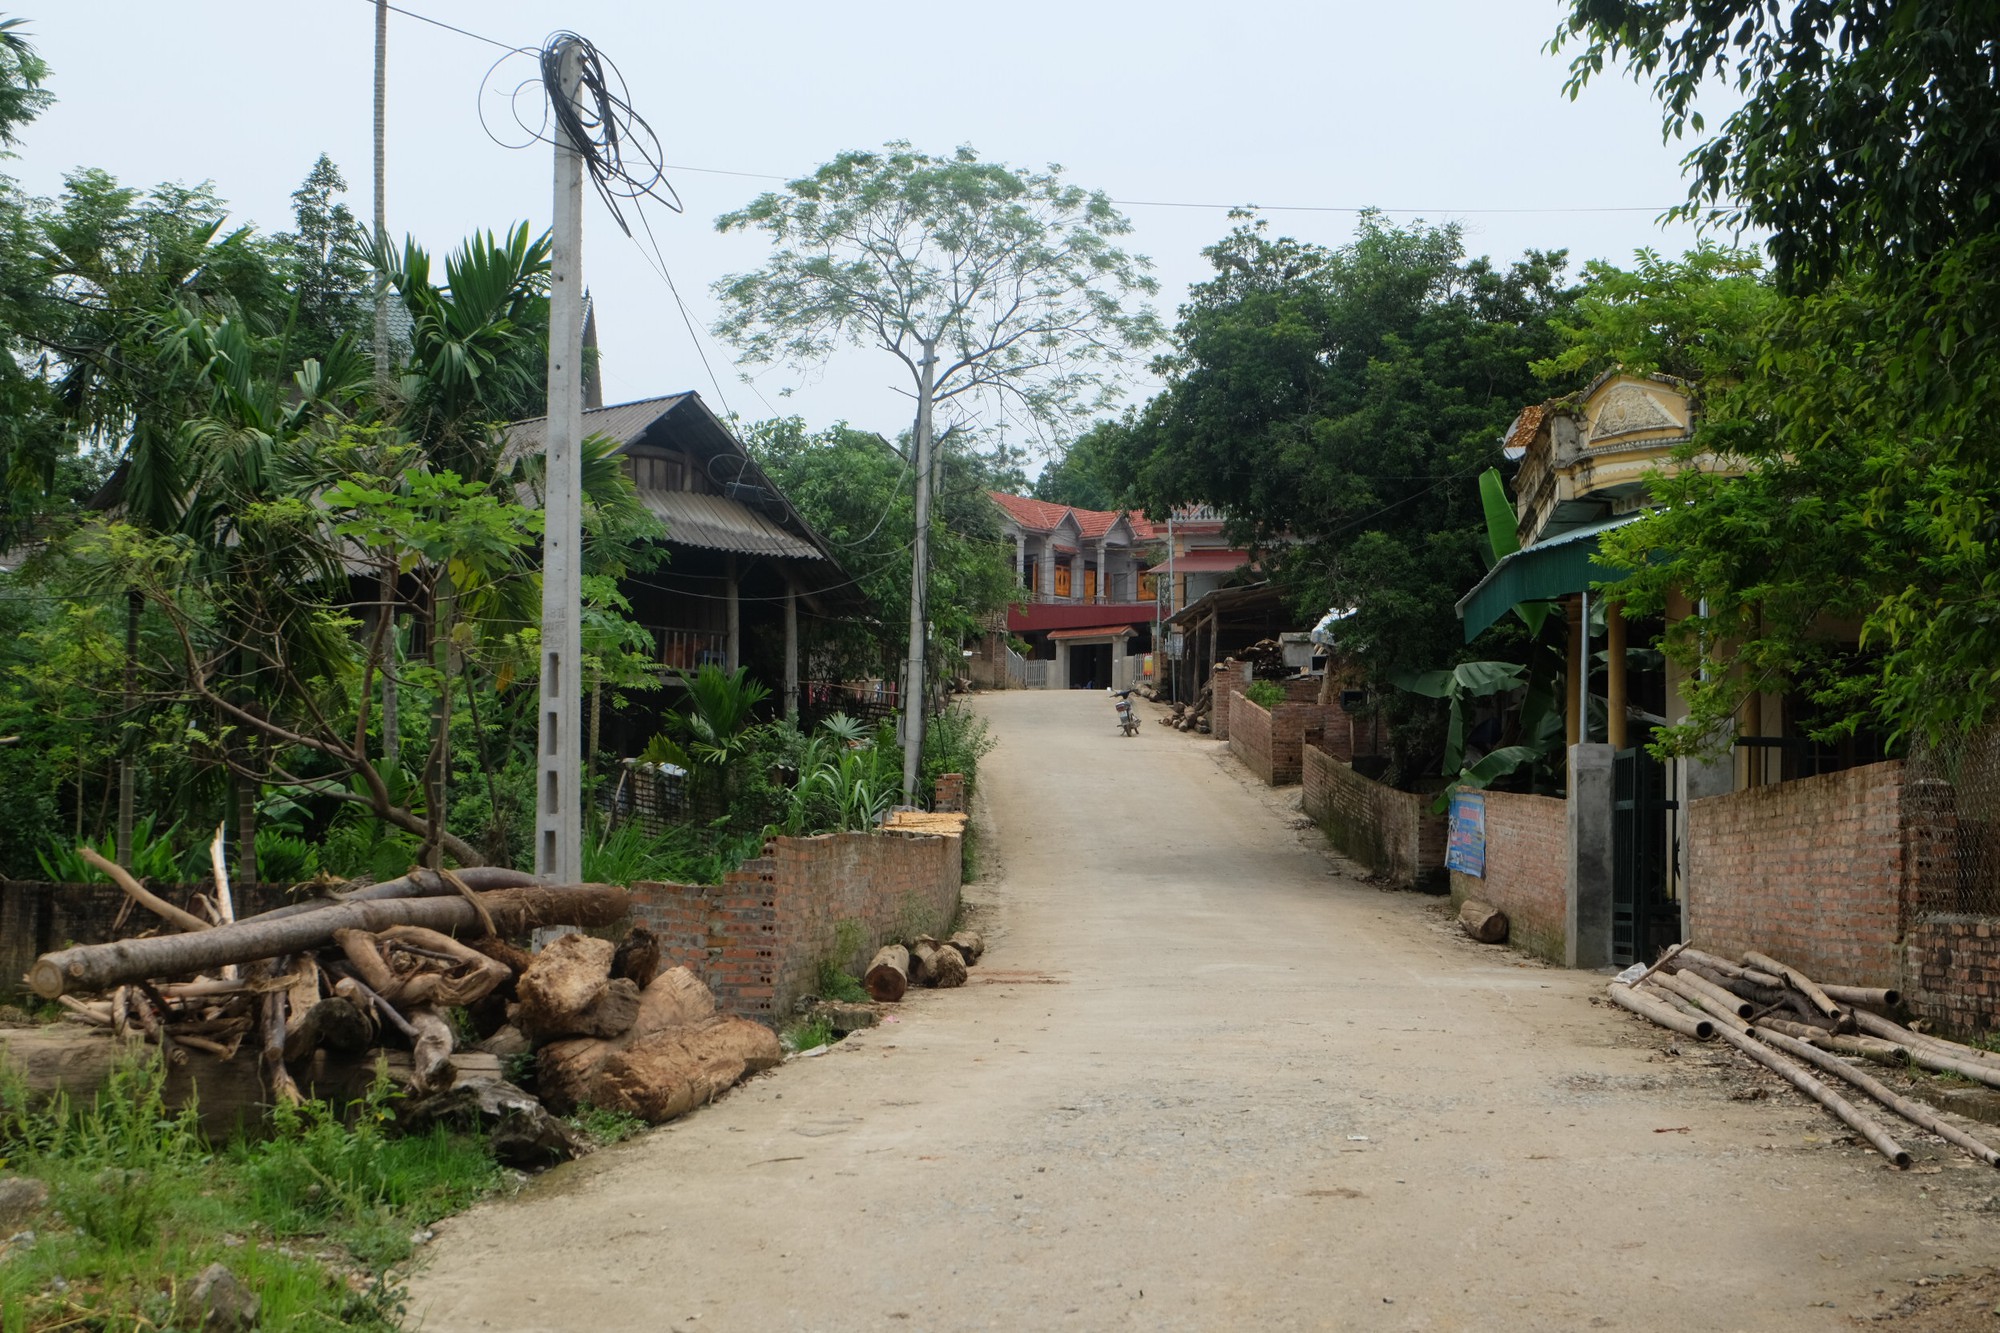 Vụ phát hiện hàng loạt ca nhiễm HIV ở Phú Thọ: Trên địa bàn xã Kim Thượng đã phát hiện 9 trường hợp nhiễm HIV từ nhiều năm trước - Ảnh 2.